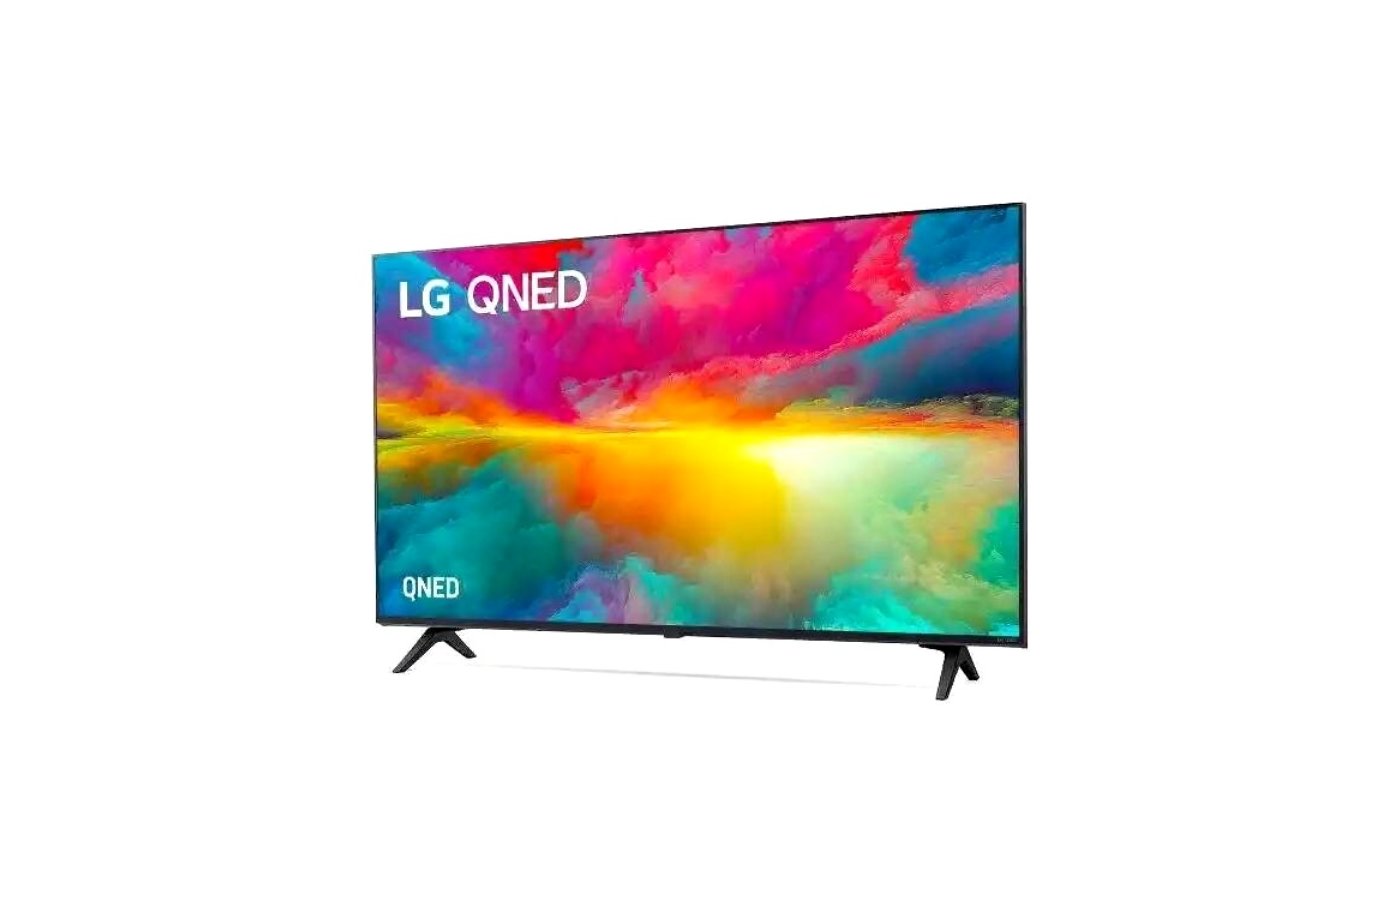 Телевизор LG 43 дюйма. Лучшие телевизоры LG 43 дюйма. LG телевизоры 4375003. LCD матрица для телевизора LG 43lm5500pla. Lg 50qned816ra arub